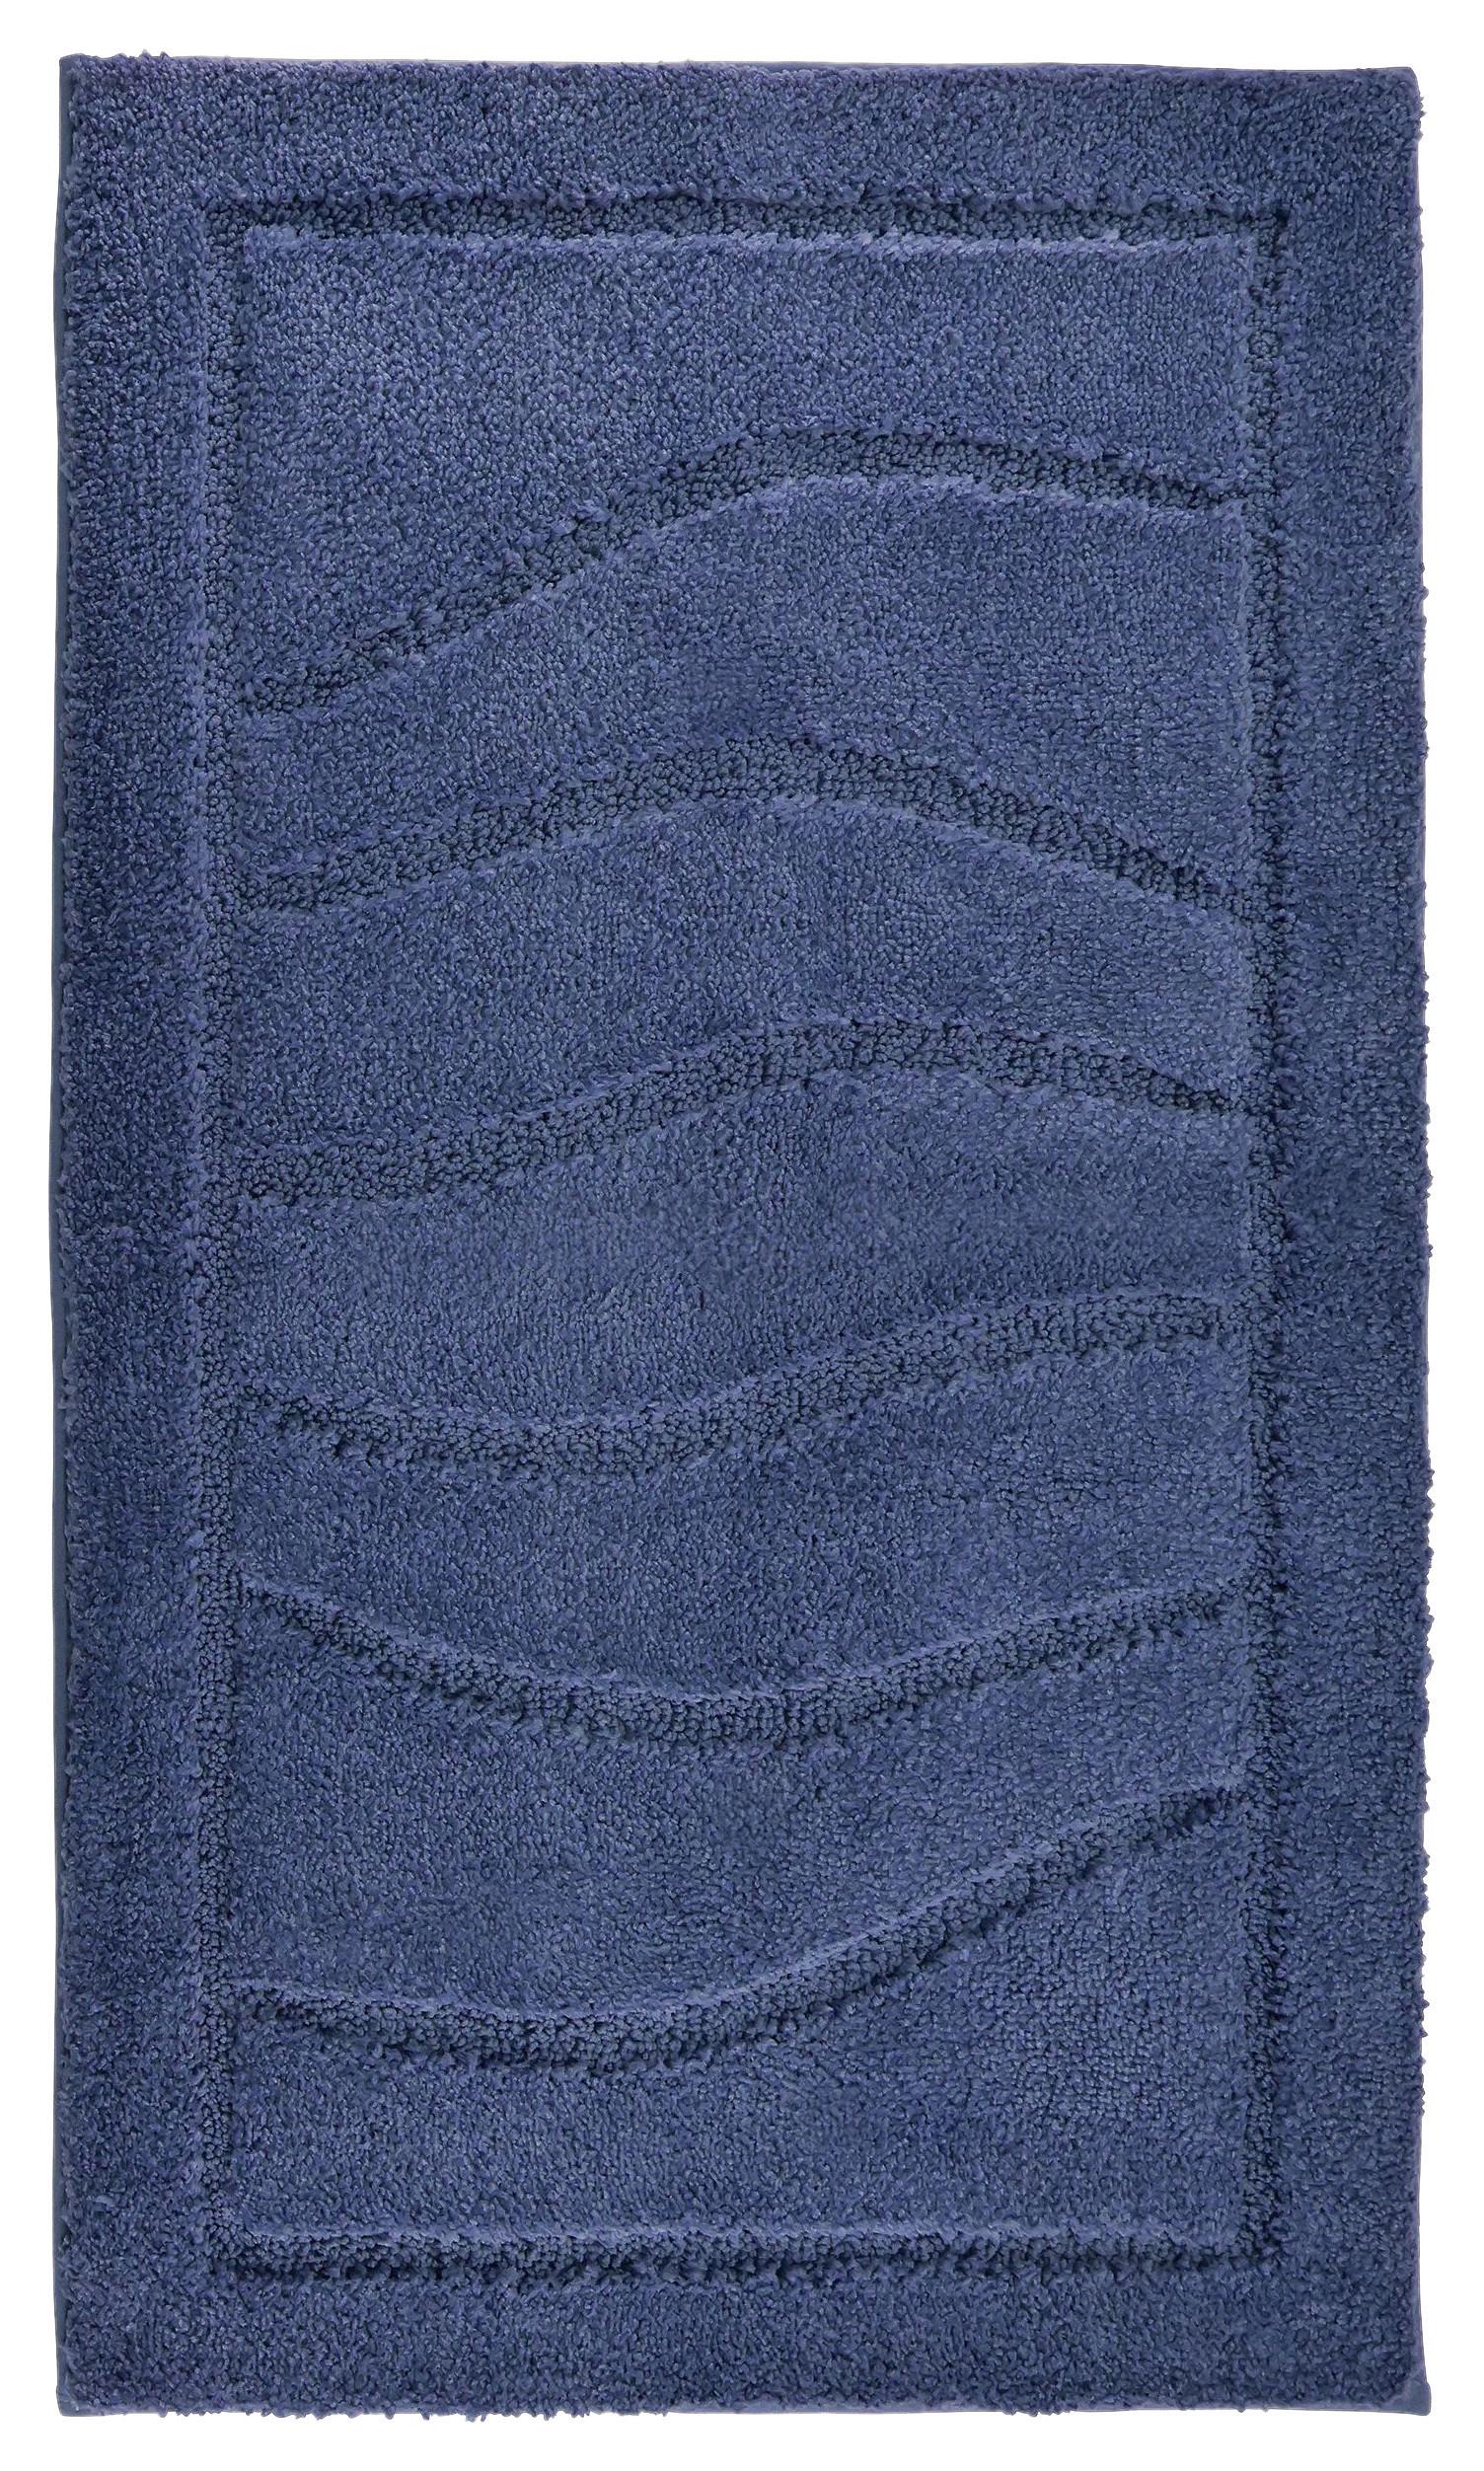 Badematte Lasse Blau 60x100 cm Rutschhemmend - Dunkelblau, ROMANTIK / LANDHAUS, Textil (60/100cm) - James Wood